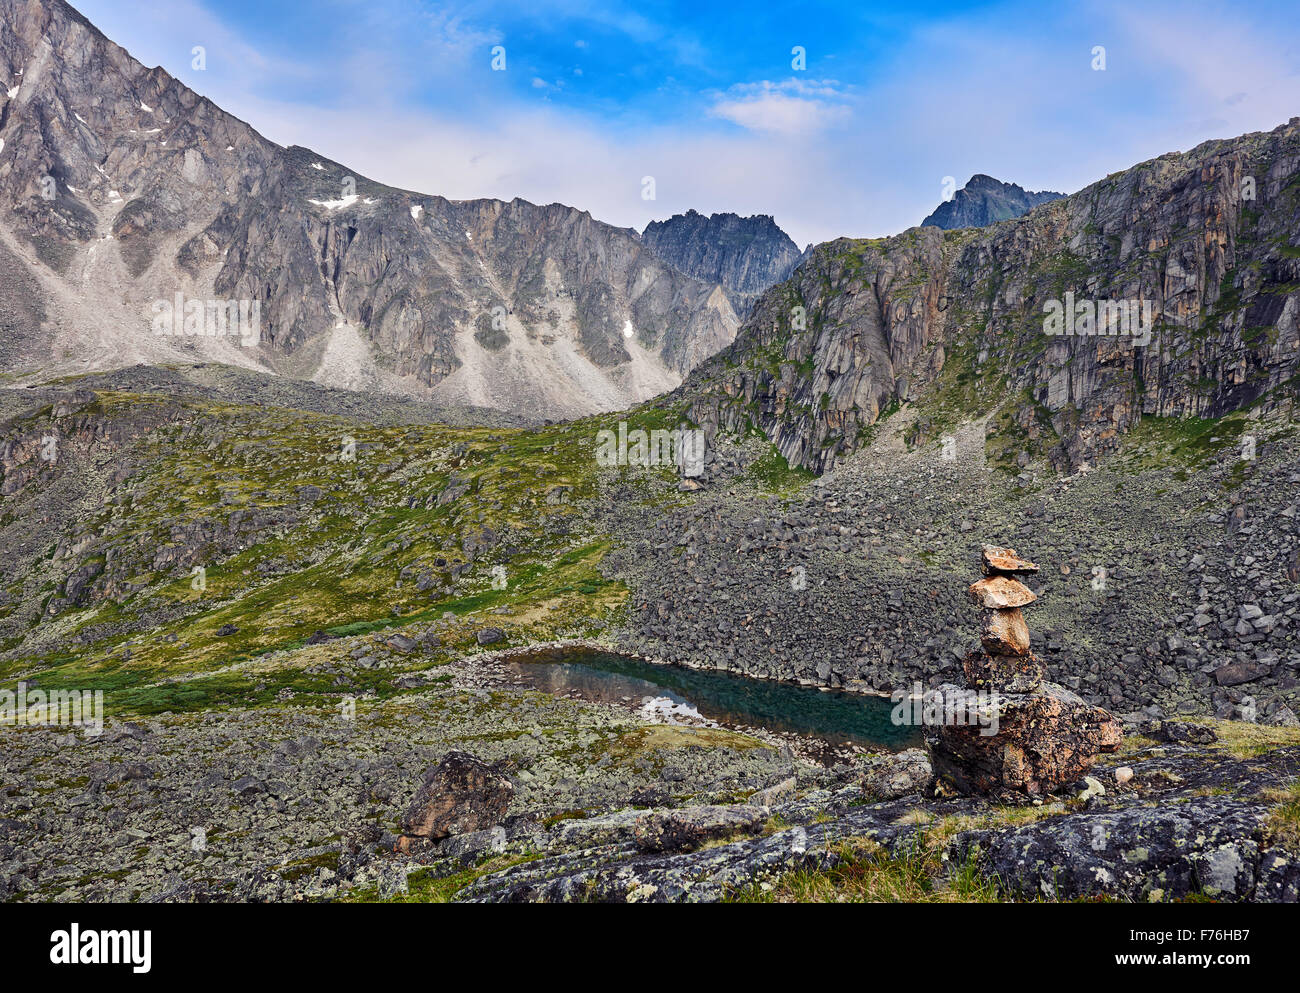 Cairn indiquant les sentiers de randonnées dans la toundra. La Sibérie orientale. Sayan de l'Est Banque D'Images